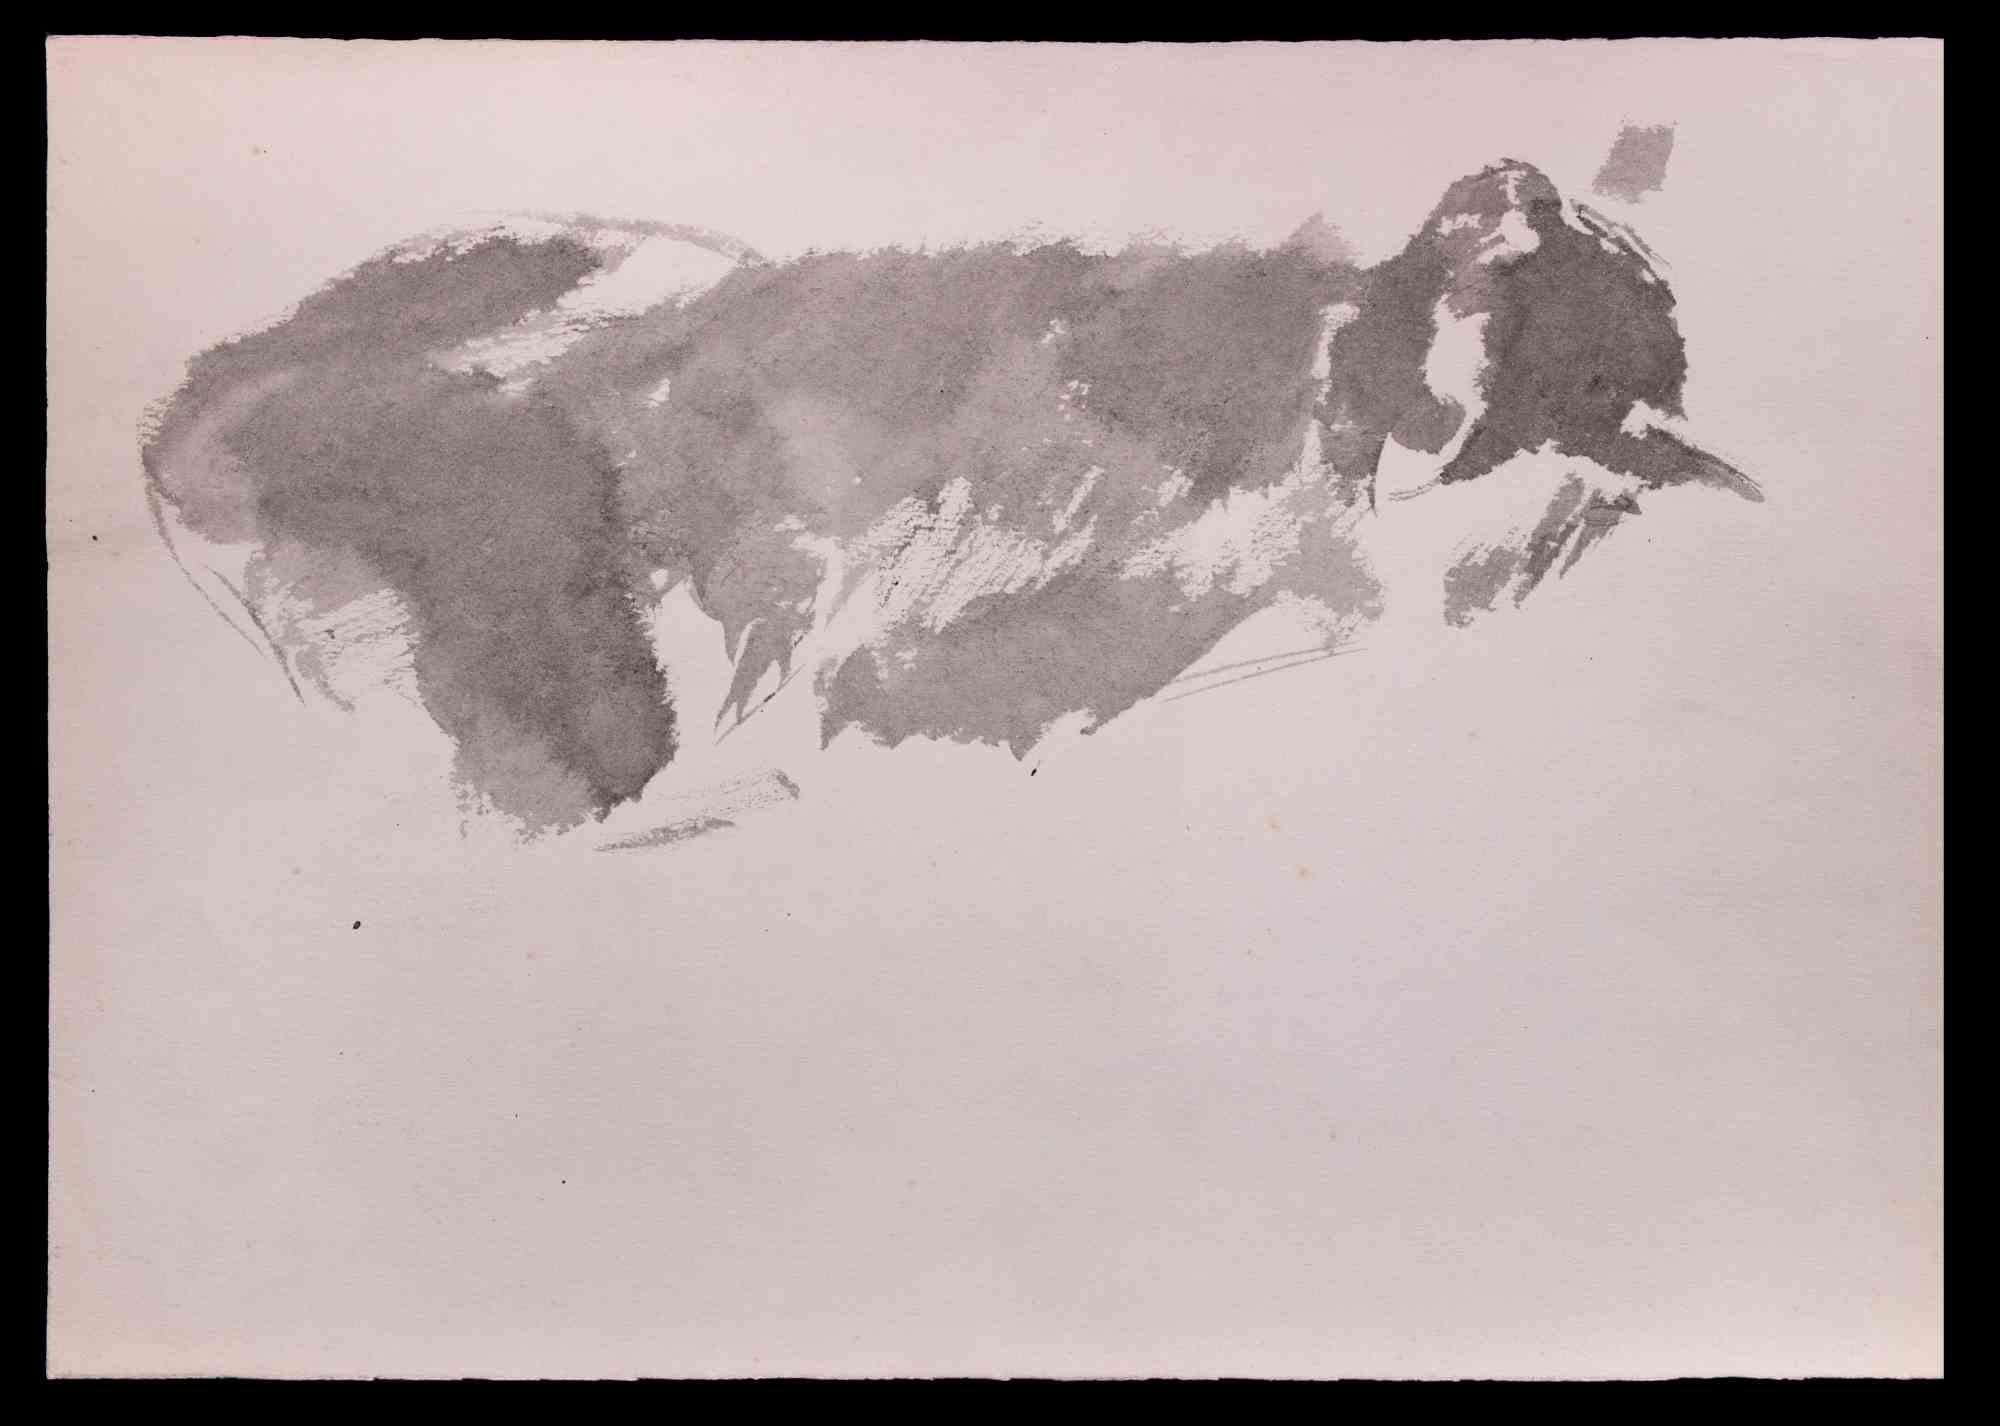 Cat est un dessin original à l'aquarelle réalisé au milieu du 20e siècle par Giselle Halff (1899-1971).

Bonnes conditions.

Giselle Halff (1899-1971) née à Hanoi, élève de R.X. Prinet, R. Ménard, L. Simon, B. Boutet de Monvel. Peintre et